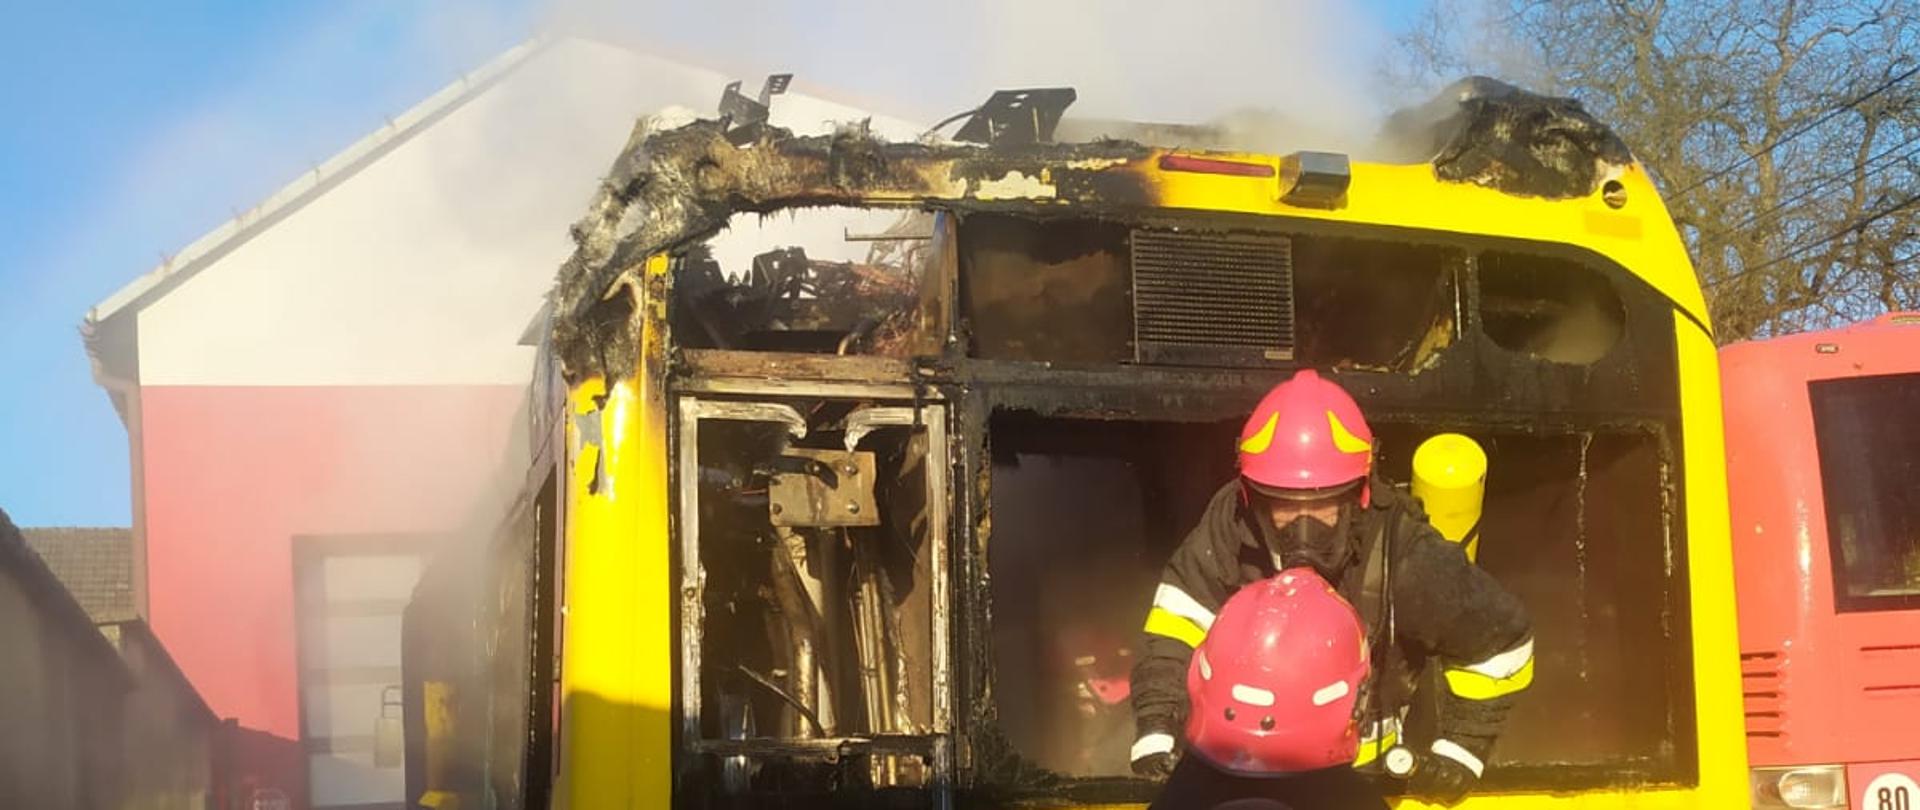 Na zdjęciu widoczny jest tył autobusu w kolorze żółtym. Strażacy w zabezpieczeniu prowadzą działania gaśnicze wewnątrz pojazdu. W górnej części widoczne są spalone elementy oraz wydobywający się z wnętrza dym.